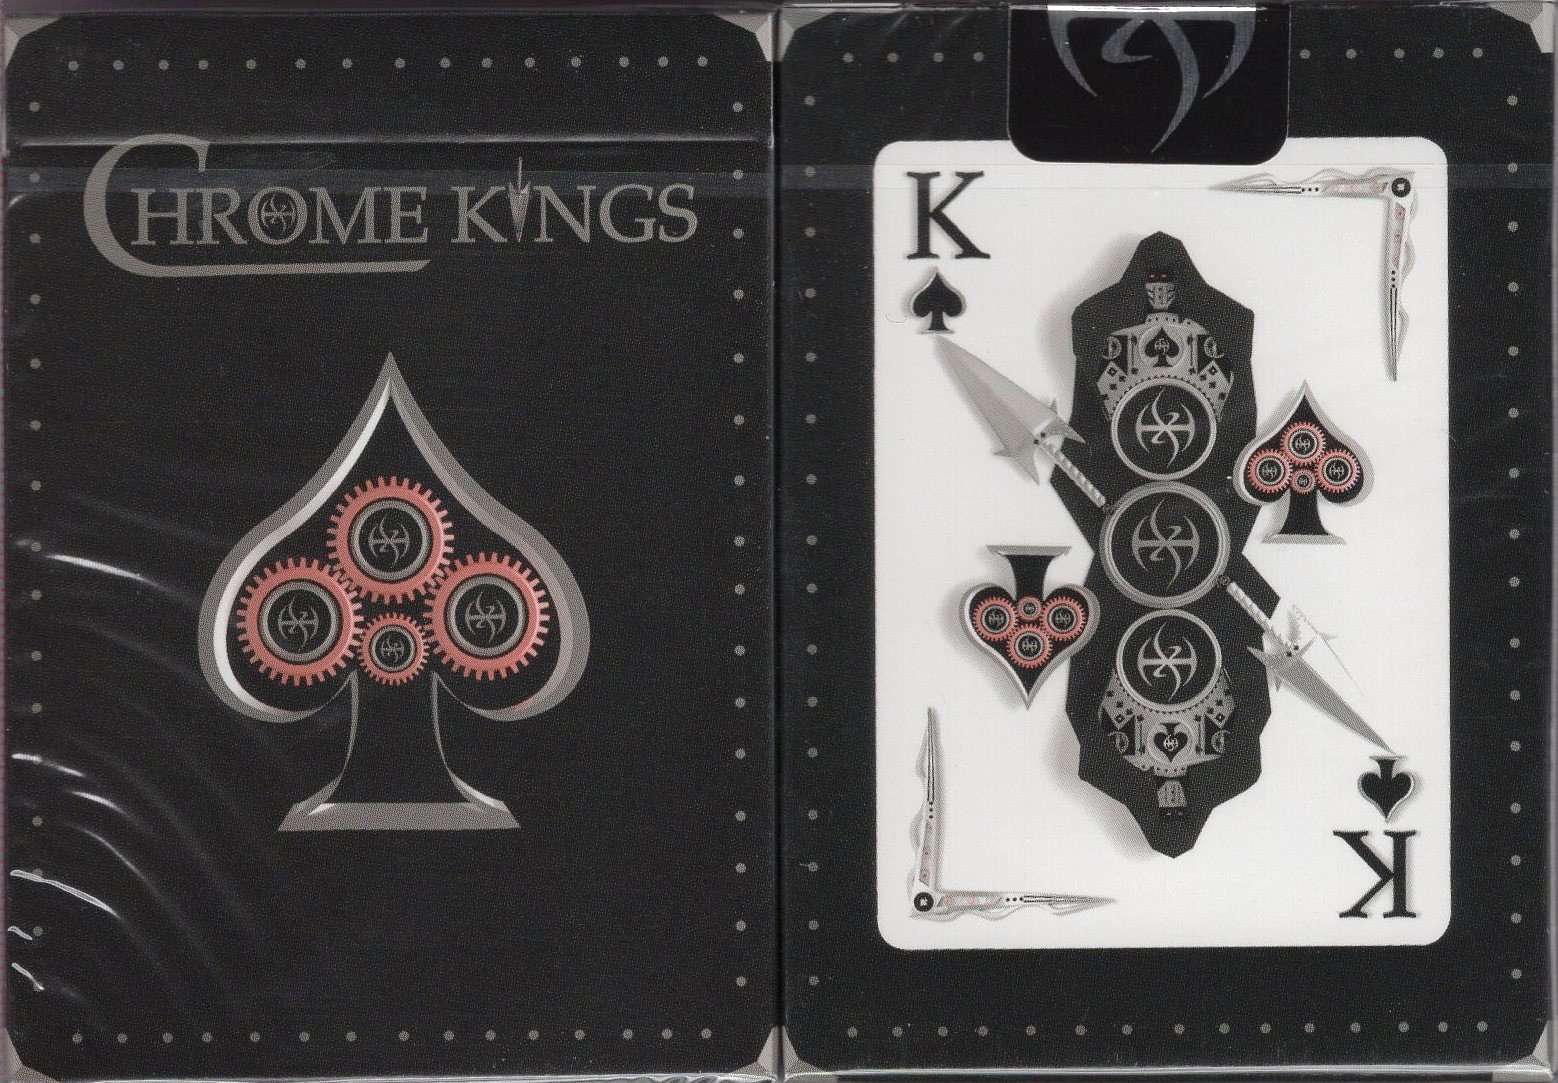 PlayingCardDecks.com-Chrome Kings Players Edition Playing Cards USPCC